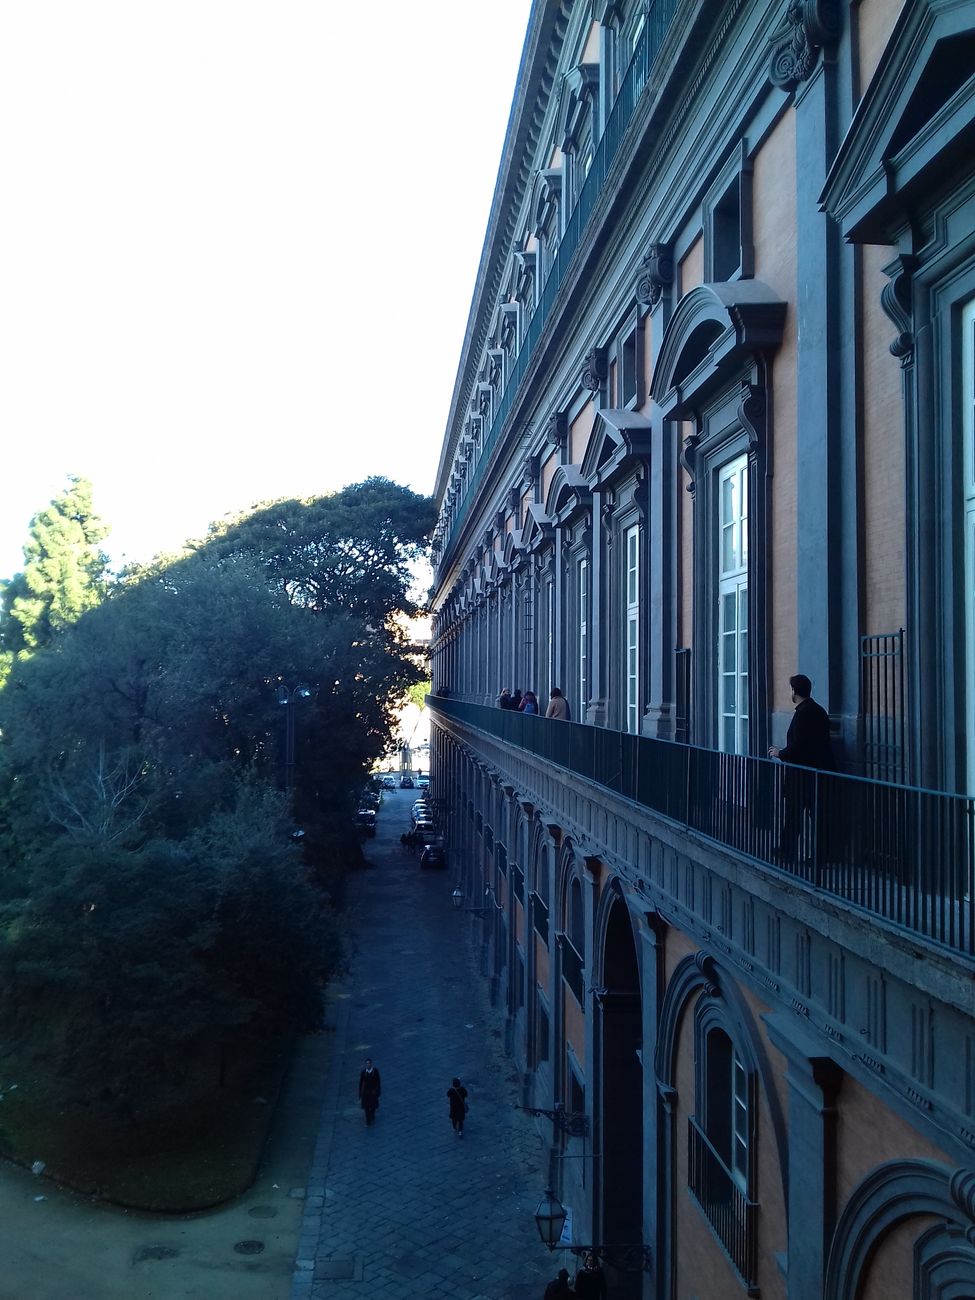 La stretta balconata che porta alla Biblioteca Nazionale Vittorio Emanuele III di Napoli